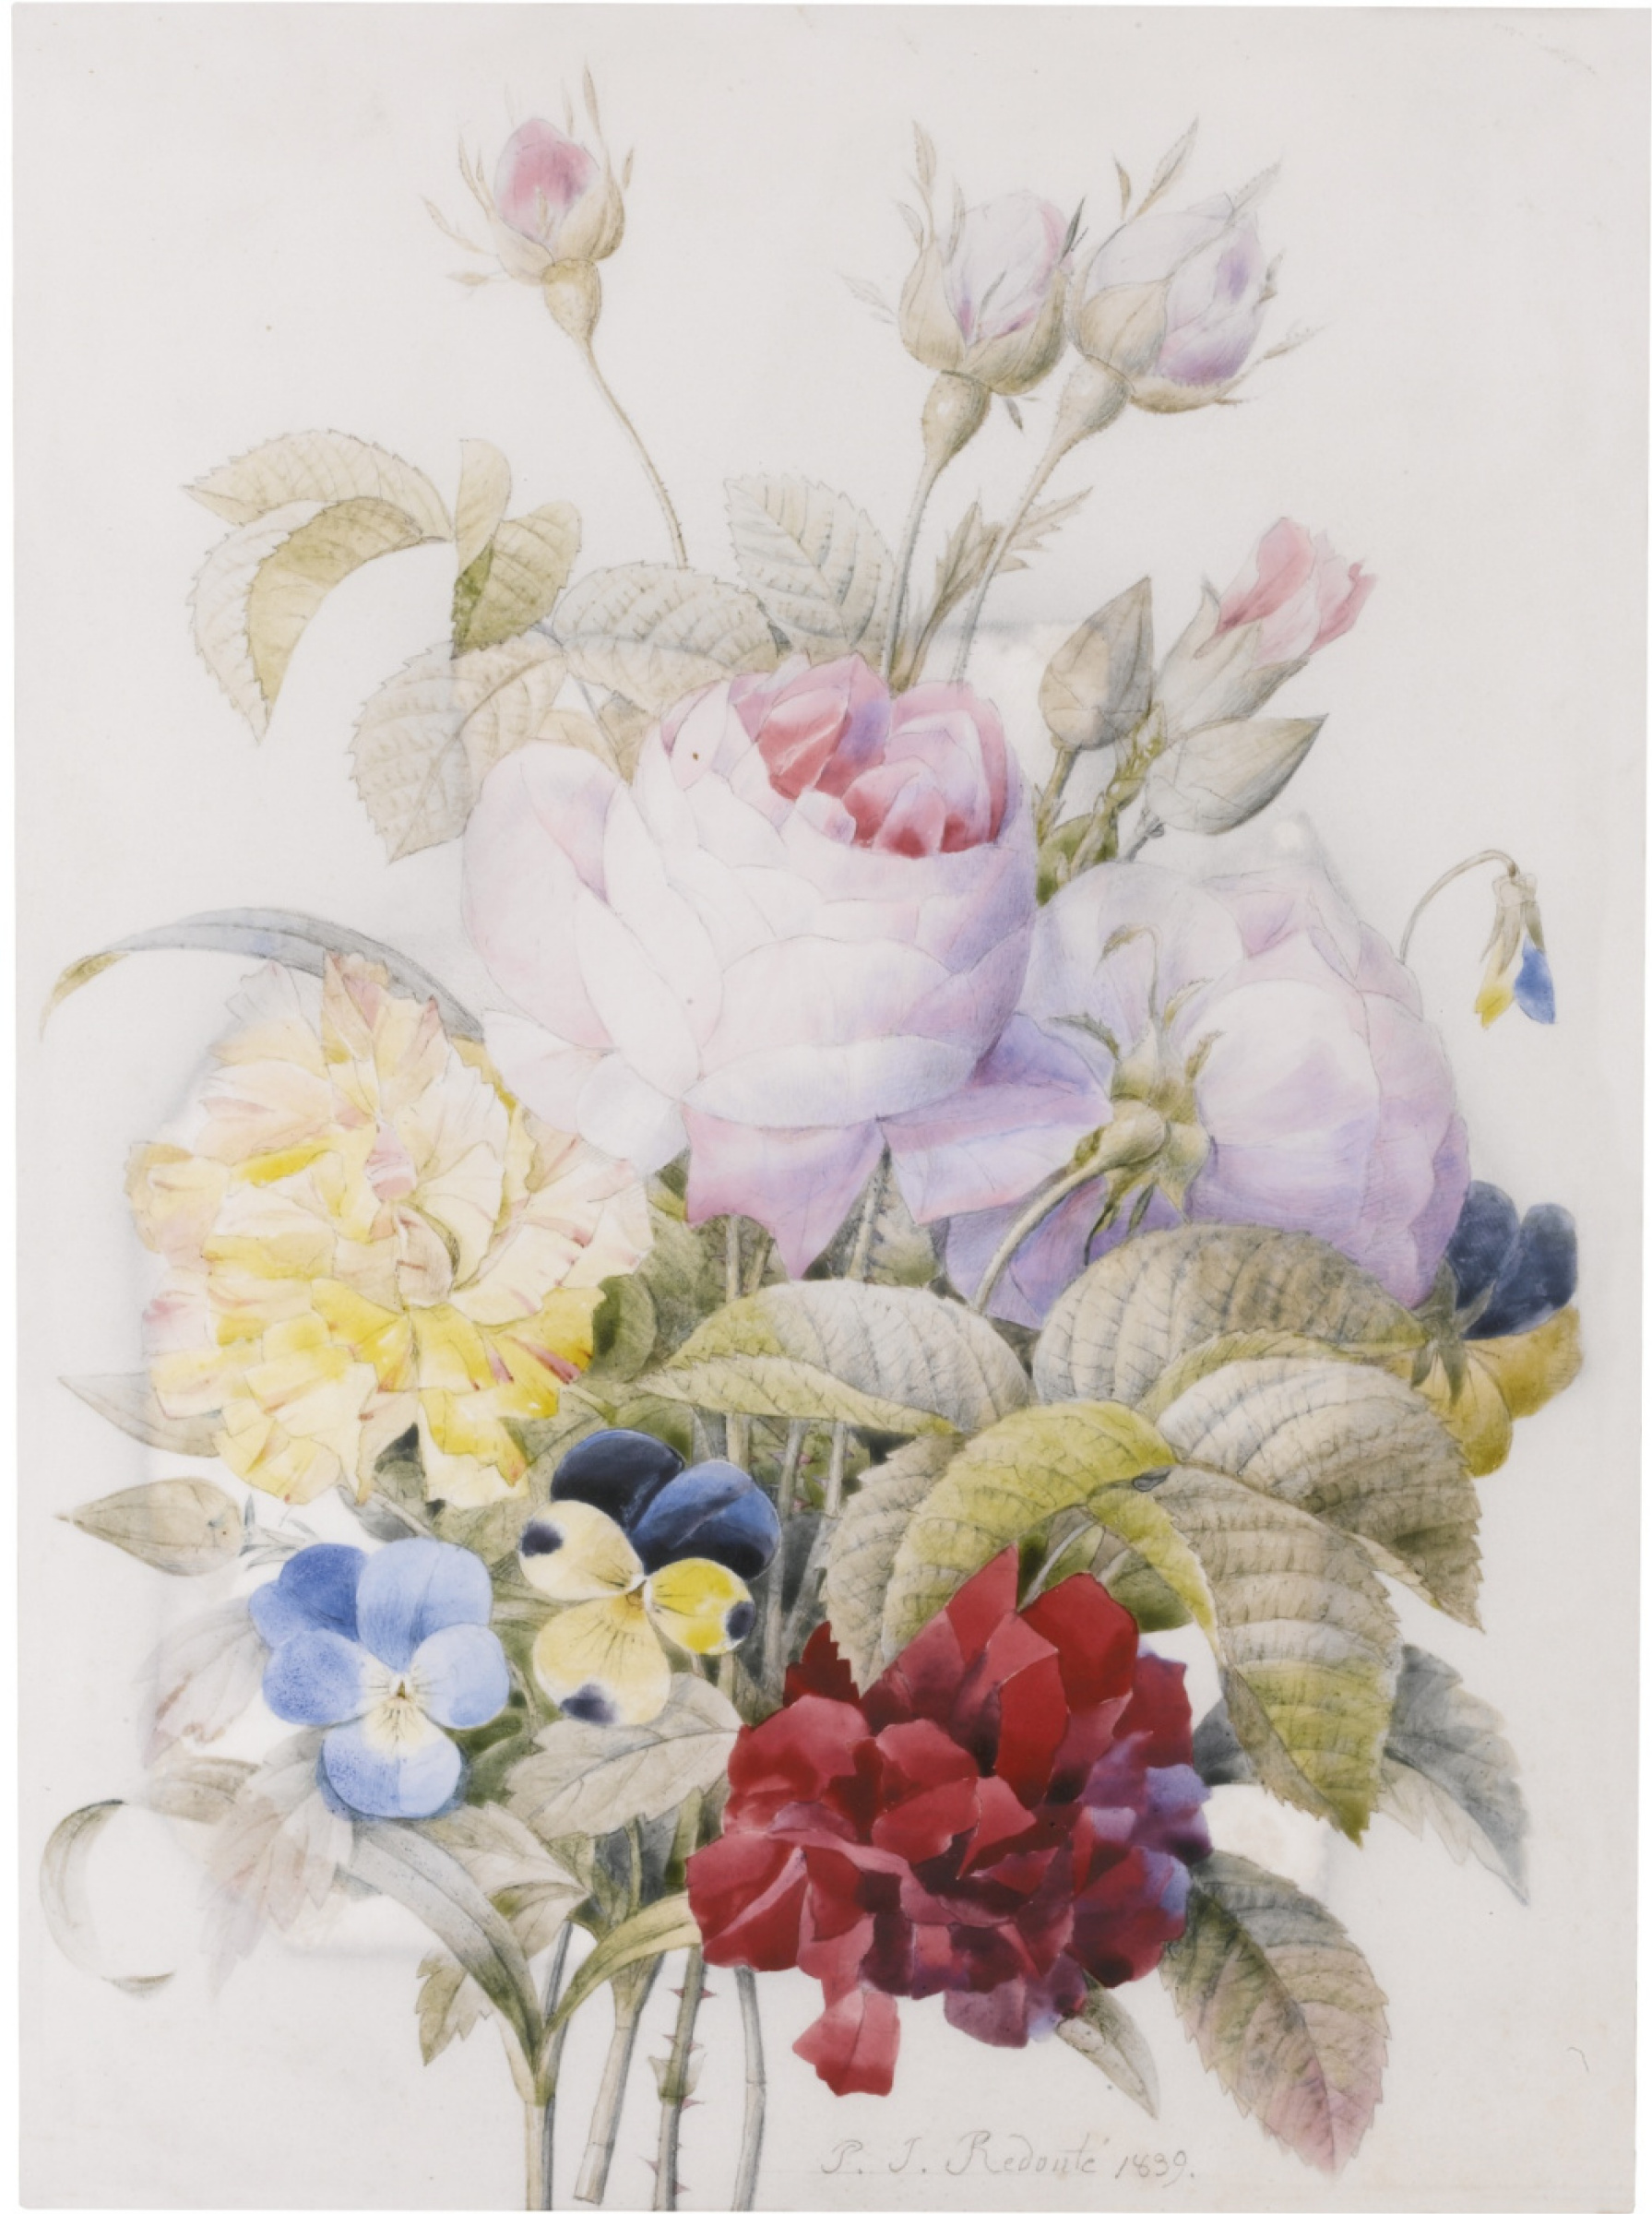 Buy a digital copy: Pierre-Joseph Redoute - Ramo con rosas, violetas y  otras flores. | Arthive